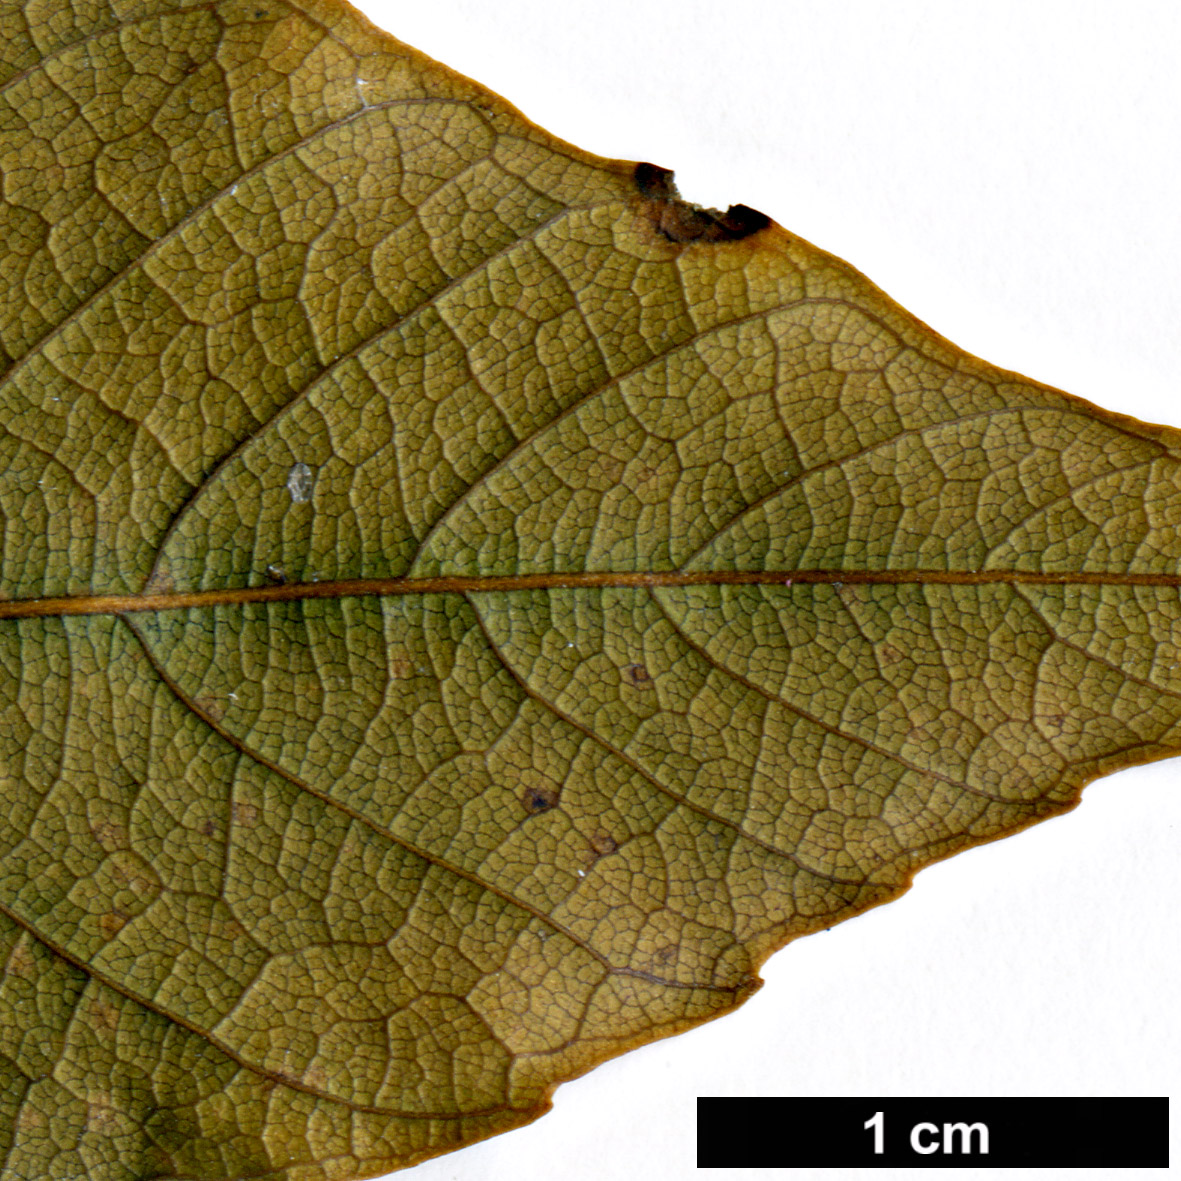 High resolution image: Family: Fagaceae - Genus: Quercus - Taxon: gemelliflora